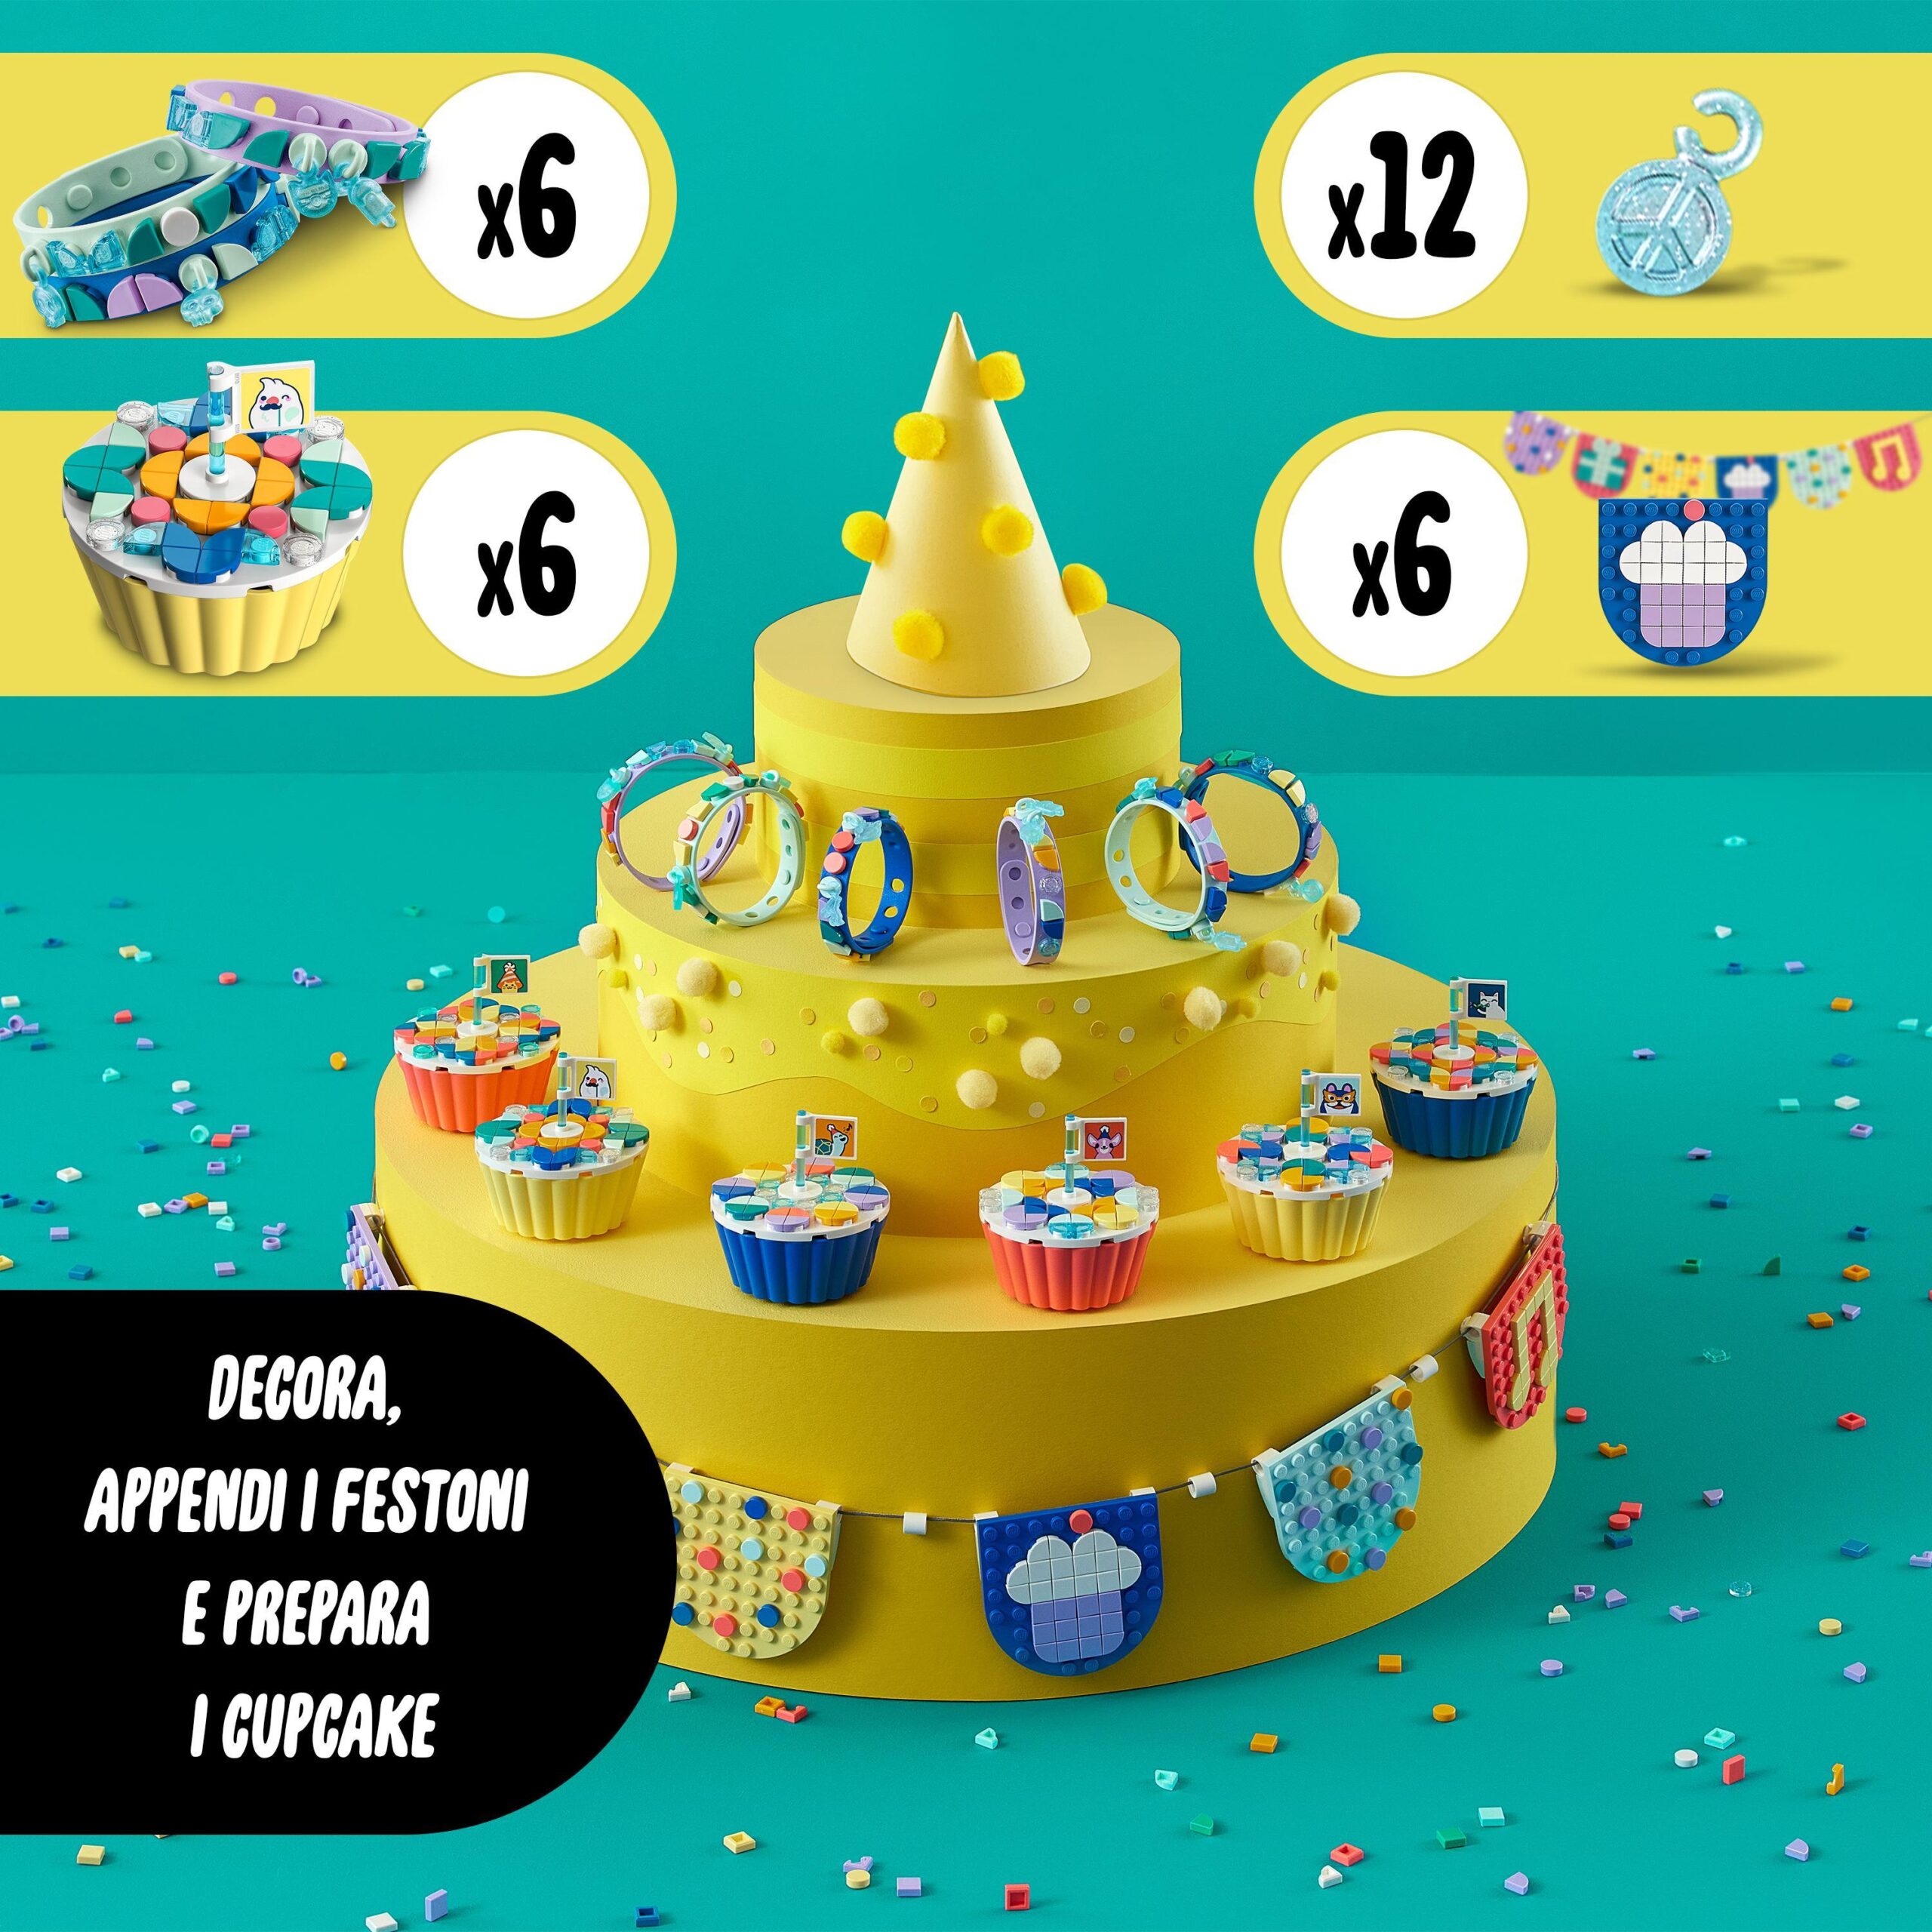 Lego dots 41806 grande kit per le feste, giochi festa compleanno bambini fai da te con cupcake, braccialetti e festoni - DOTS